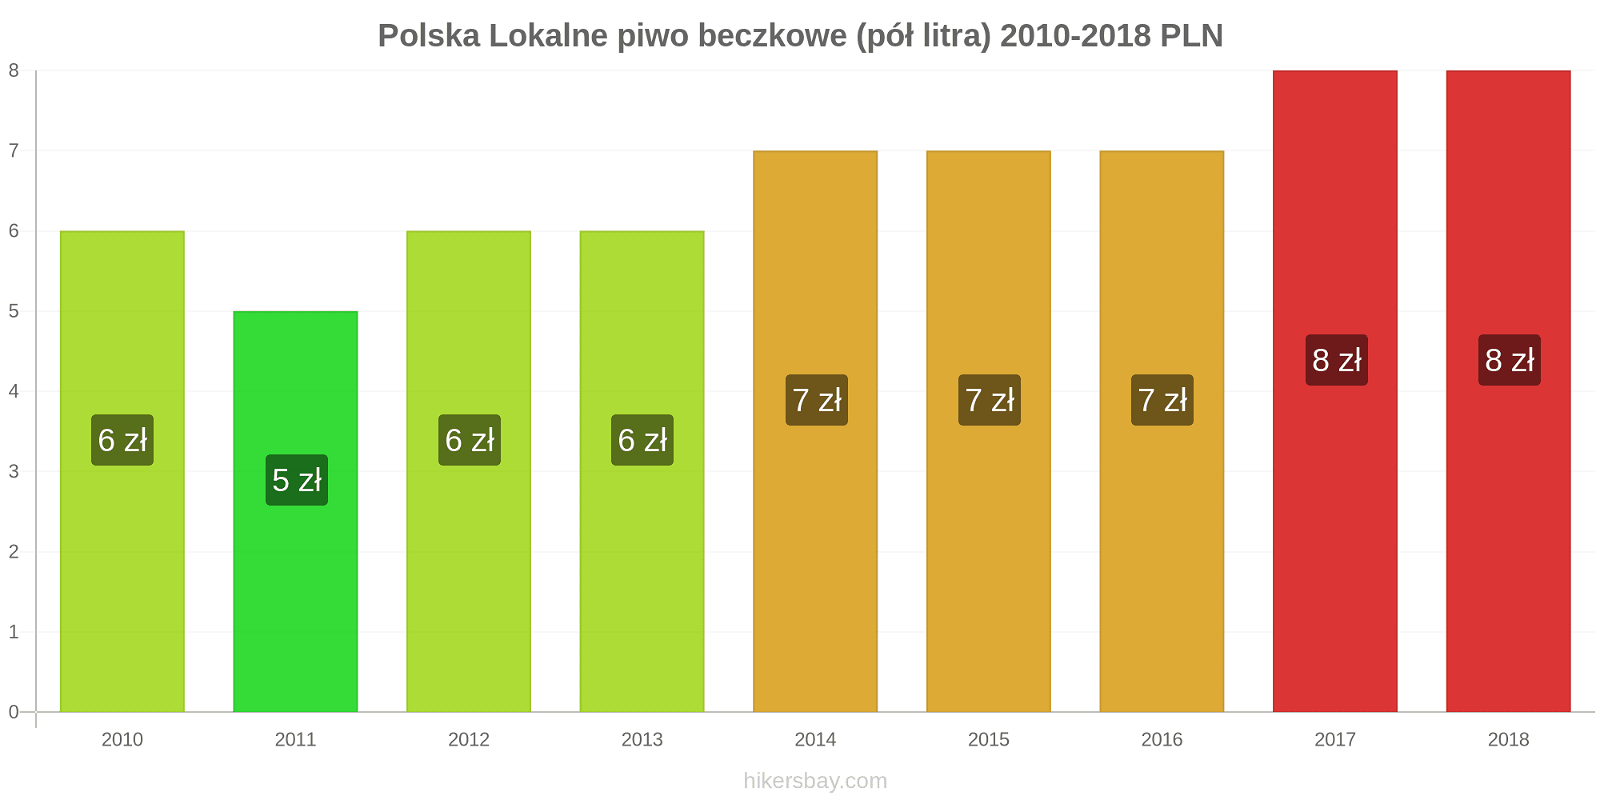 Polska zmiany cen Lokalne piwo beczkowe (pół litra) hikersbay.com